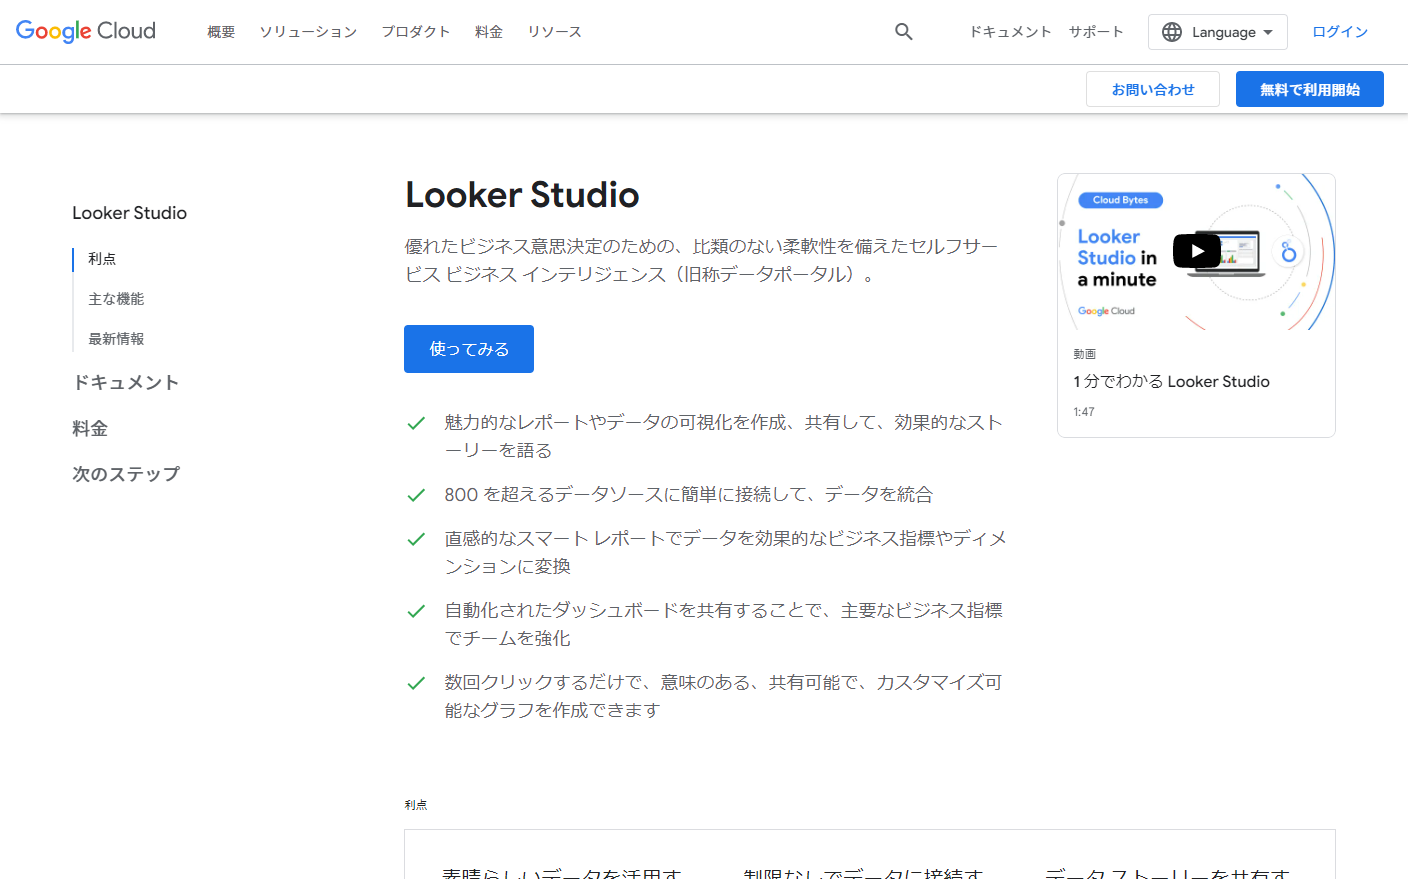 Looker Studio（Googleデータポータル）